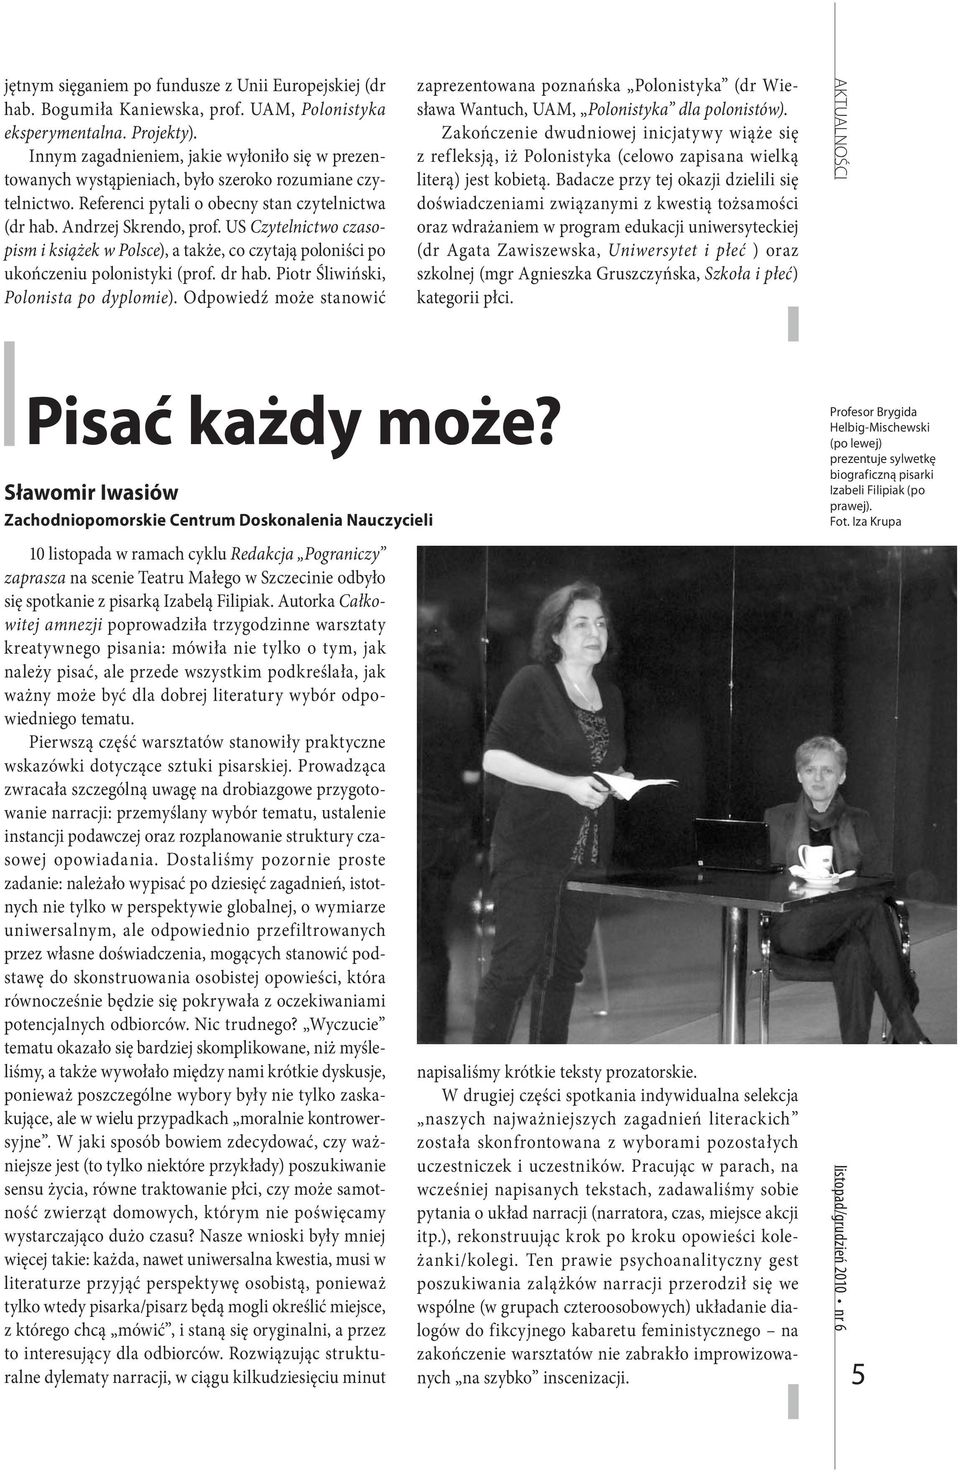 US Czytelnictwo czasopism i książek w Polsce), a także, co czytają poloniści po ukończeniu polonistyki (prof. dr hab. Piotr Śliwiński, Polonista po dyplomie).